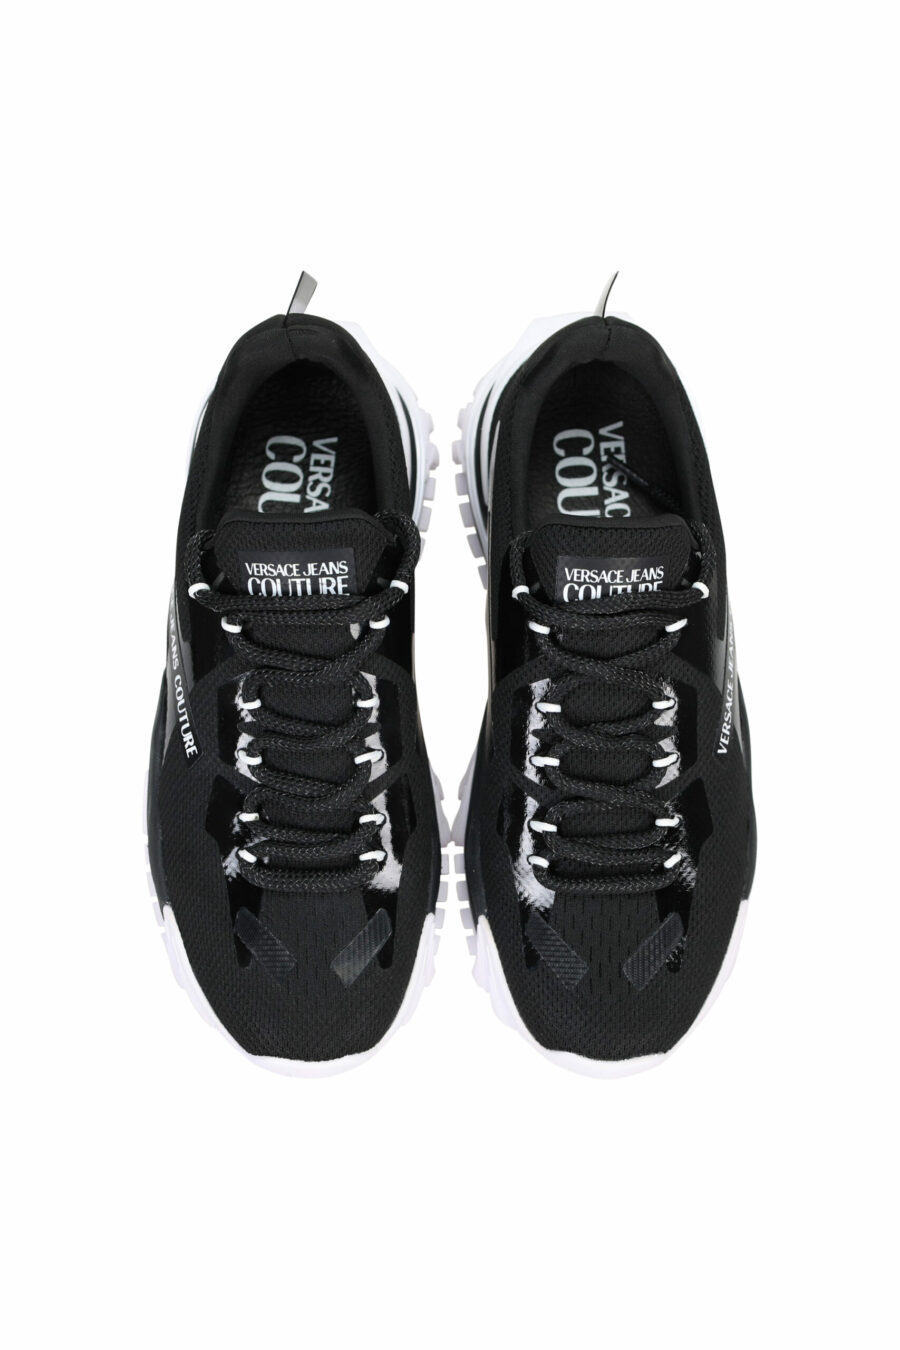 Zapatillas negras mix con minilogo blanco y suela blanca - 8052019489880 4 scaled